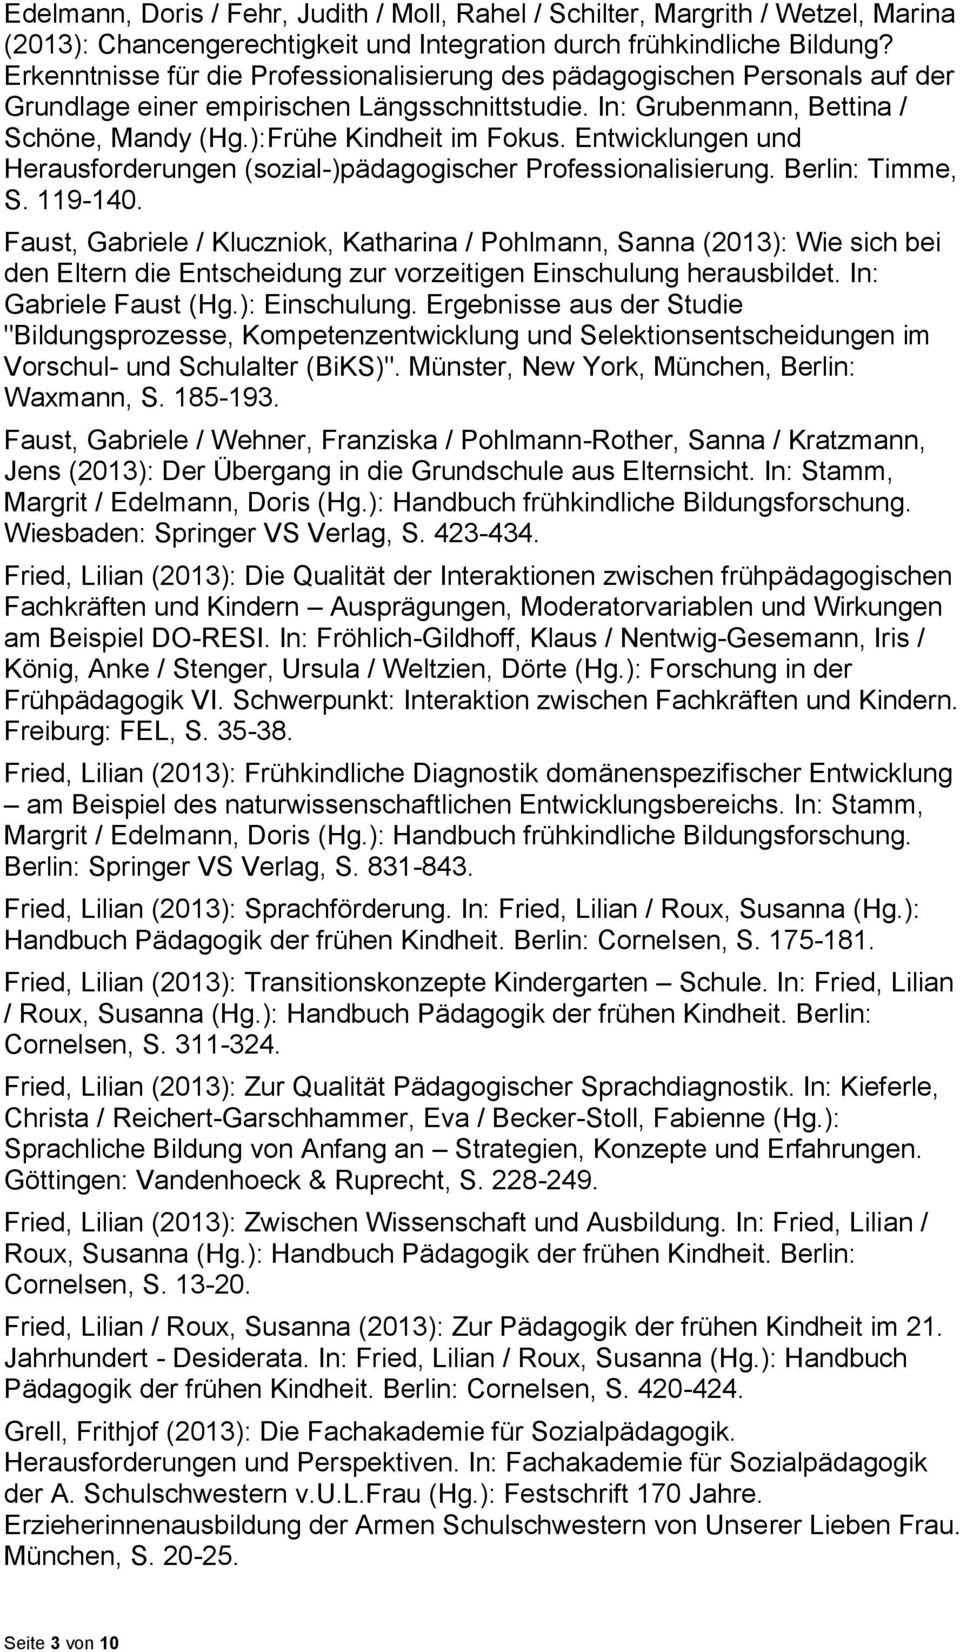 Entwicklungen und Herausforderungen (sozial-)pädagogischer Professionalisierung. Berlin: Timme, S. 119-140.